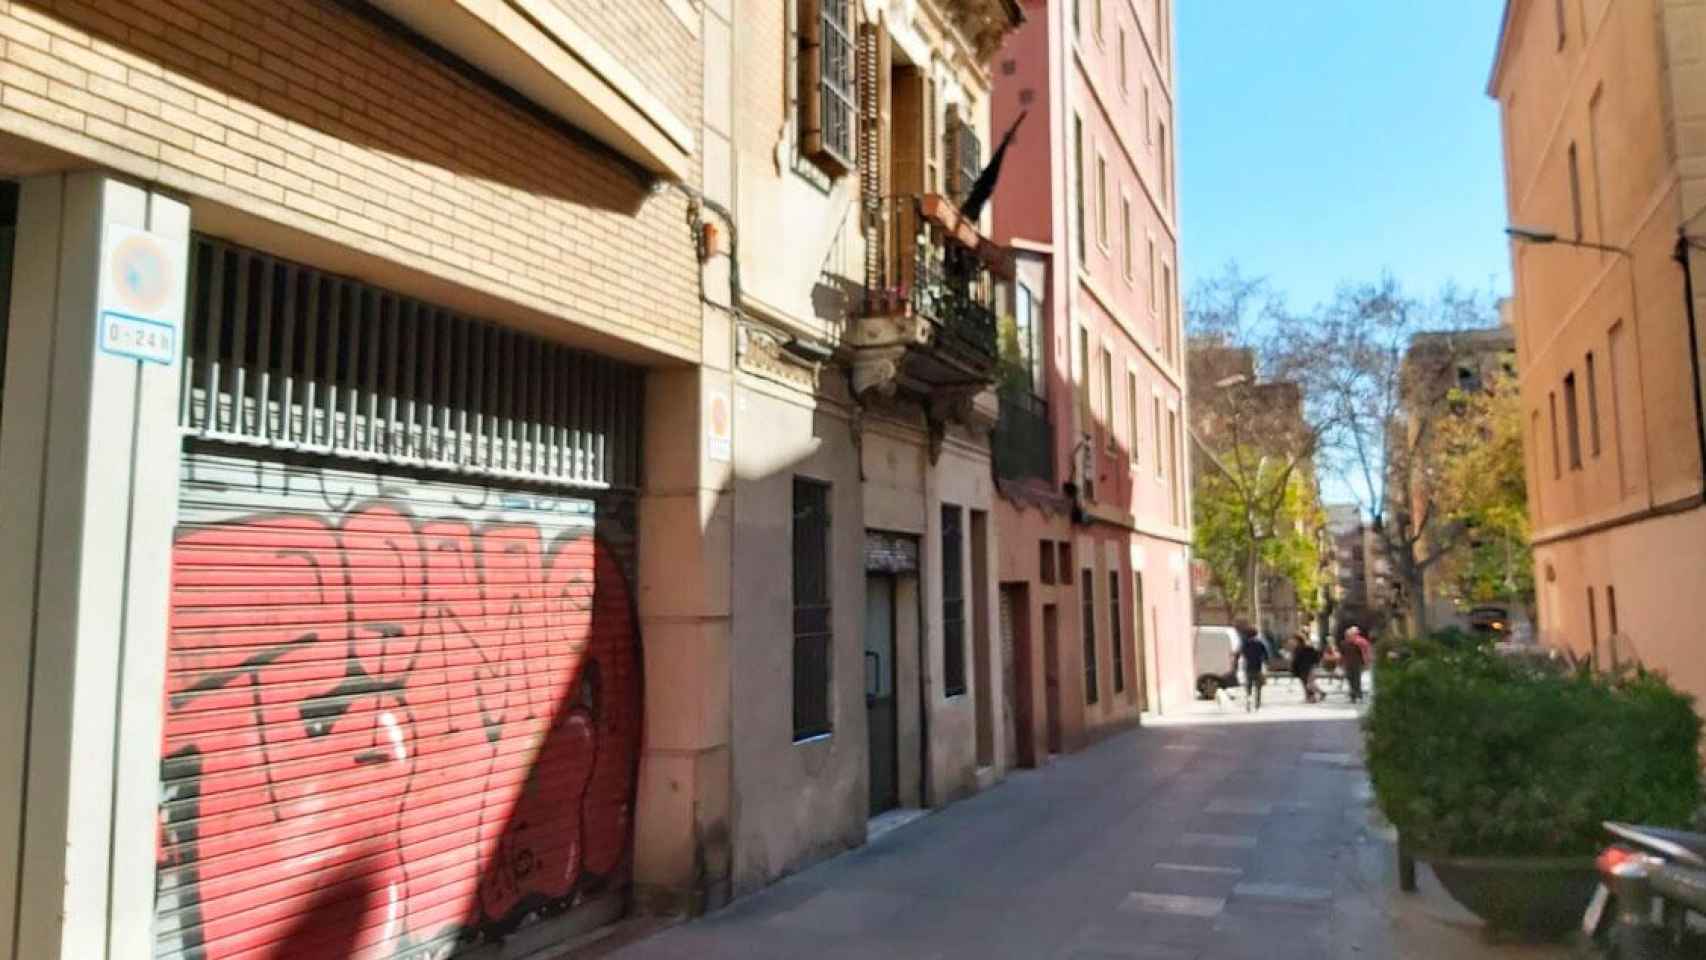 Zona en la que se ha descartado un positivo por coronavirus en Barcelona / CG